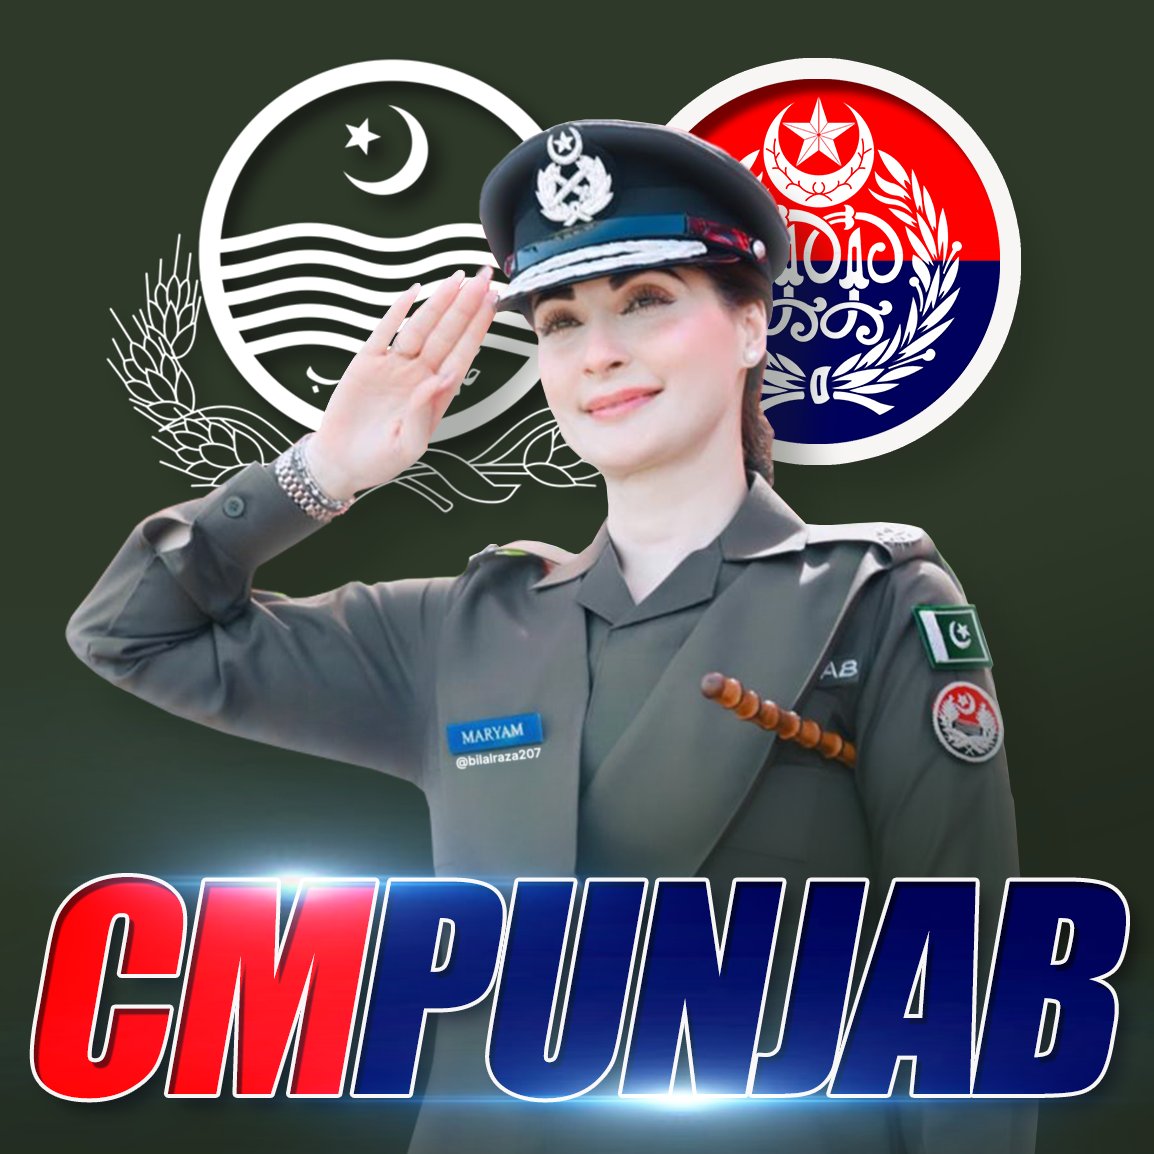 CM Punjab | Maryam Nawaz Sharif 🫡📸
#Maryamazing